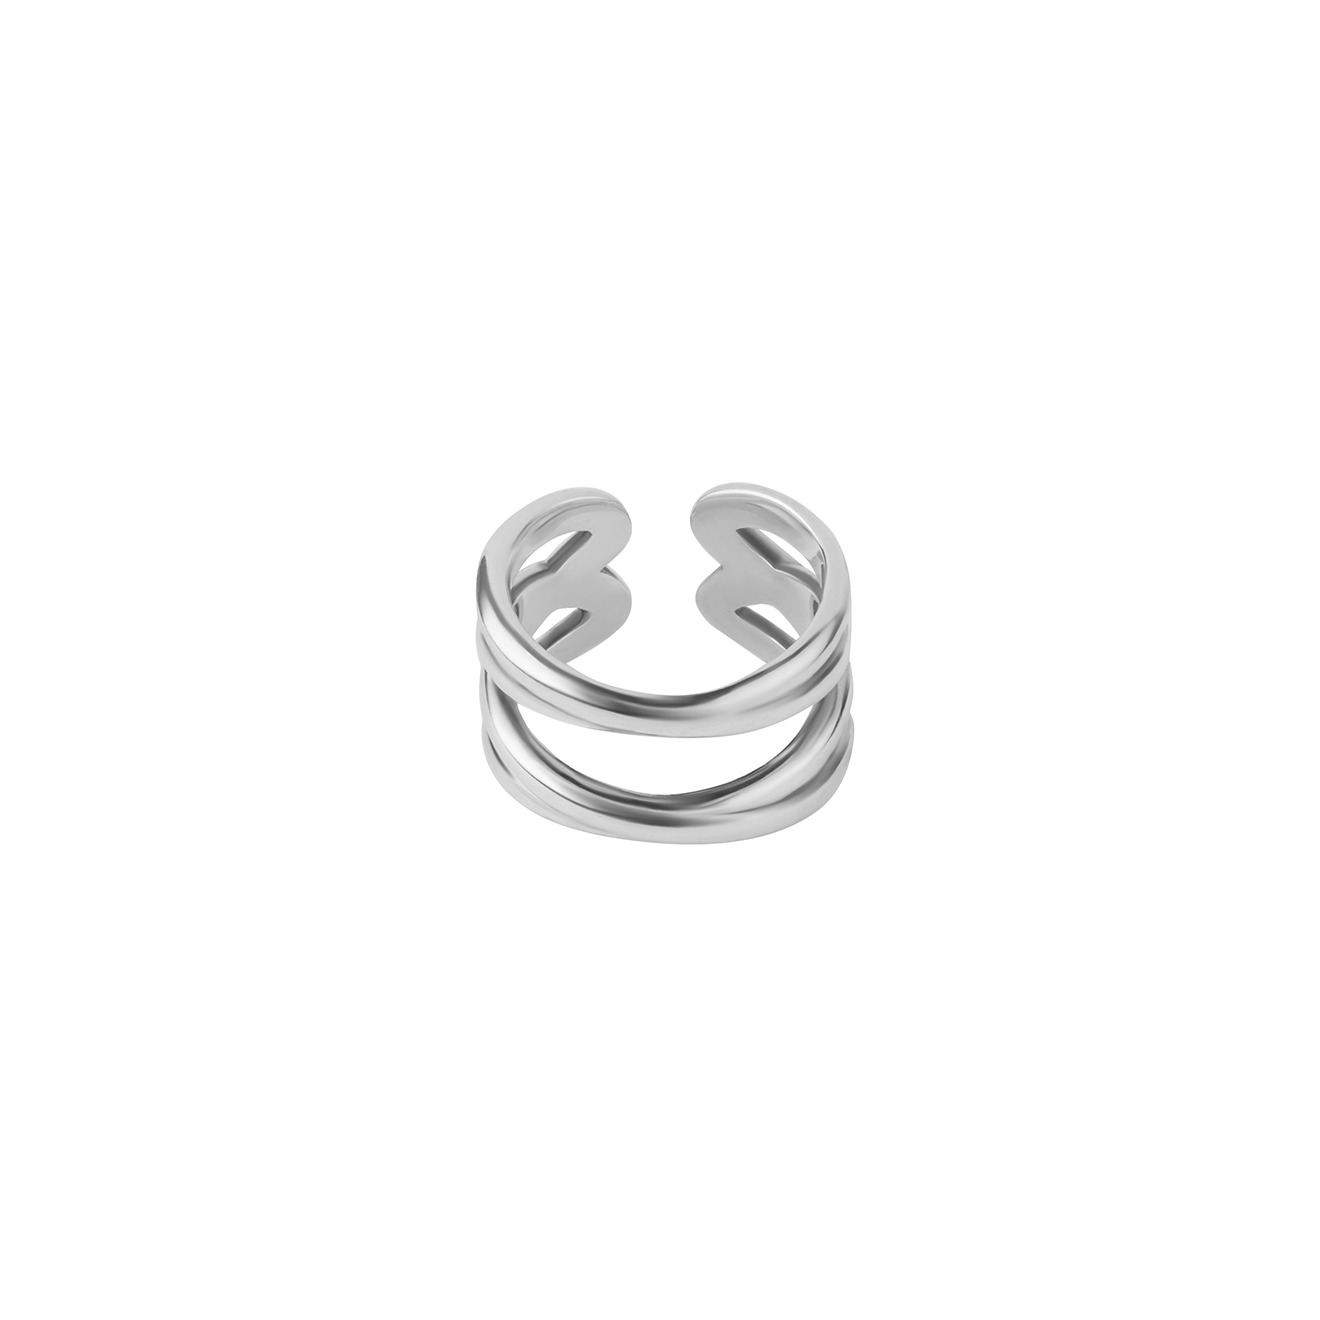 Philippe Audibert Незамкнутое двойное кольцо, покрытое серебром фужер ромашка медный посереб